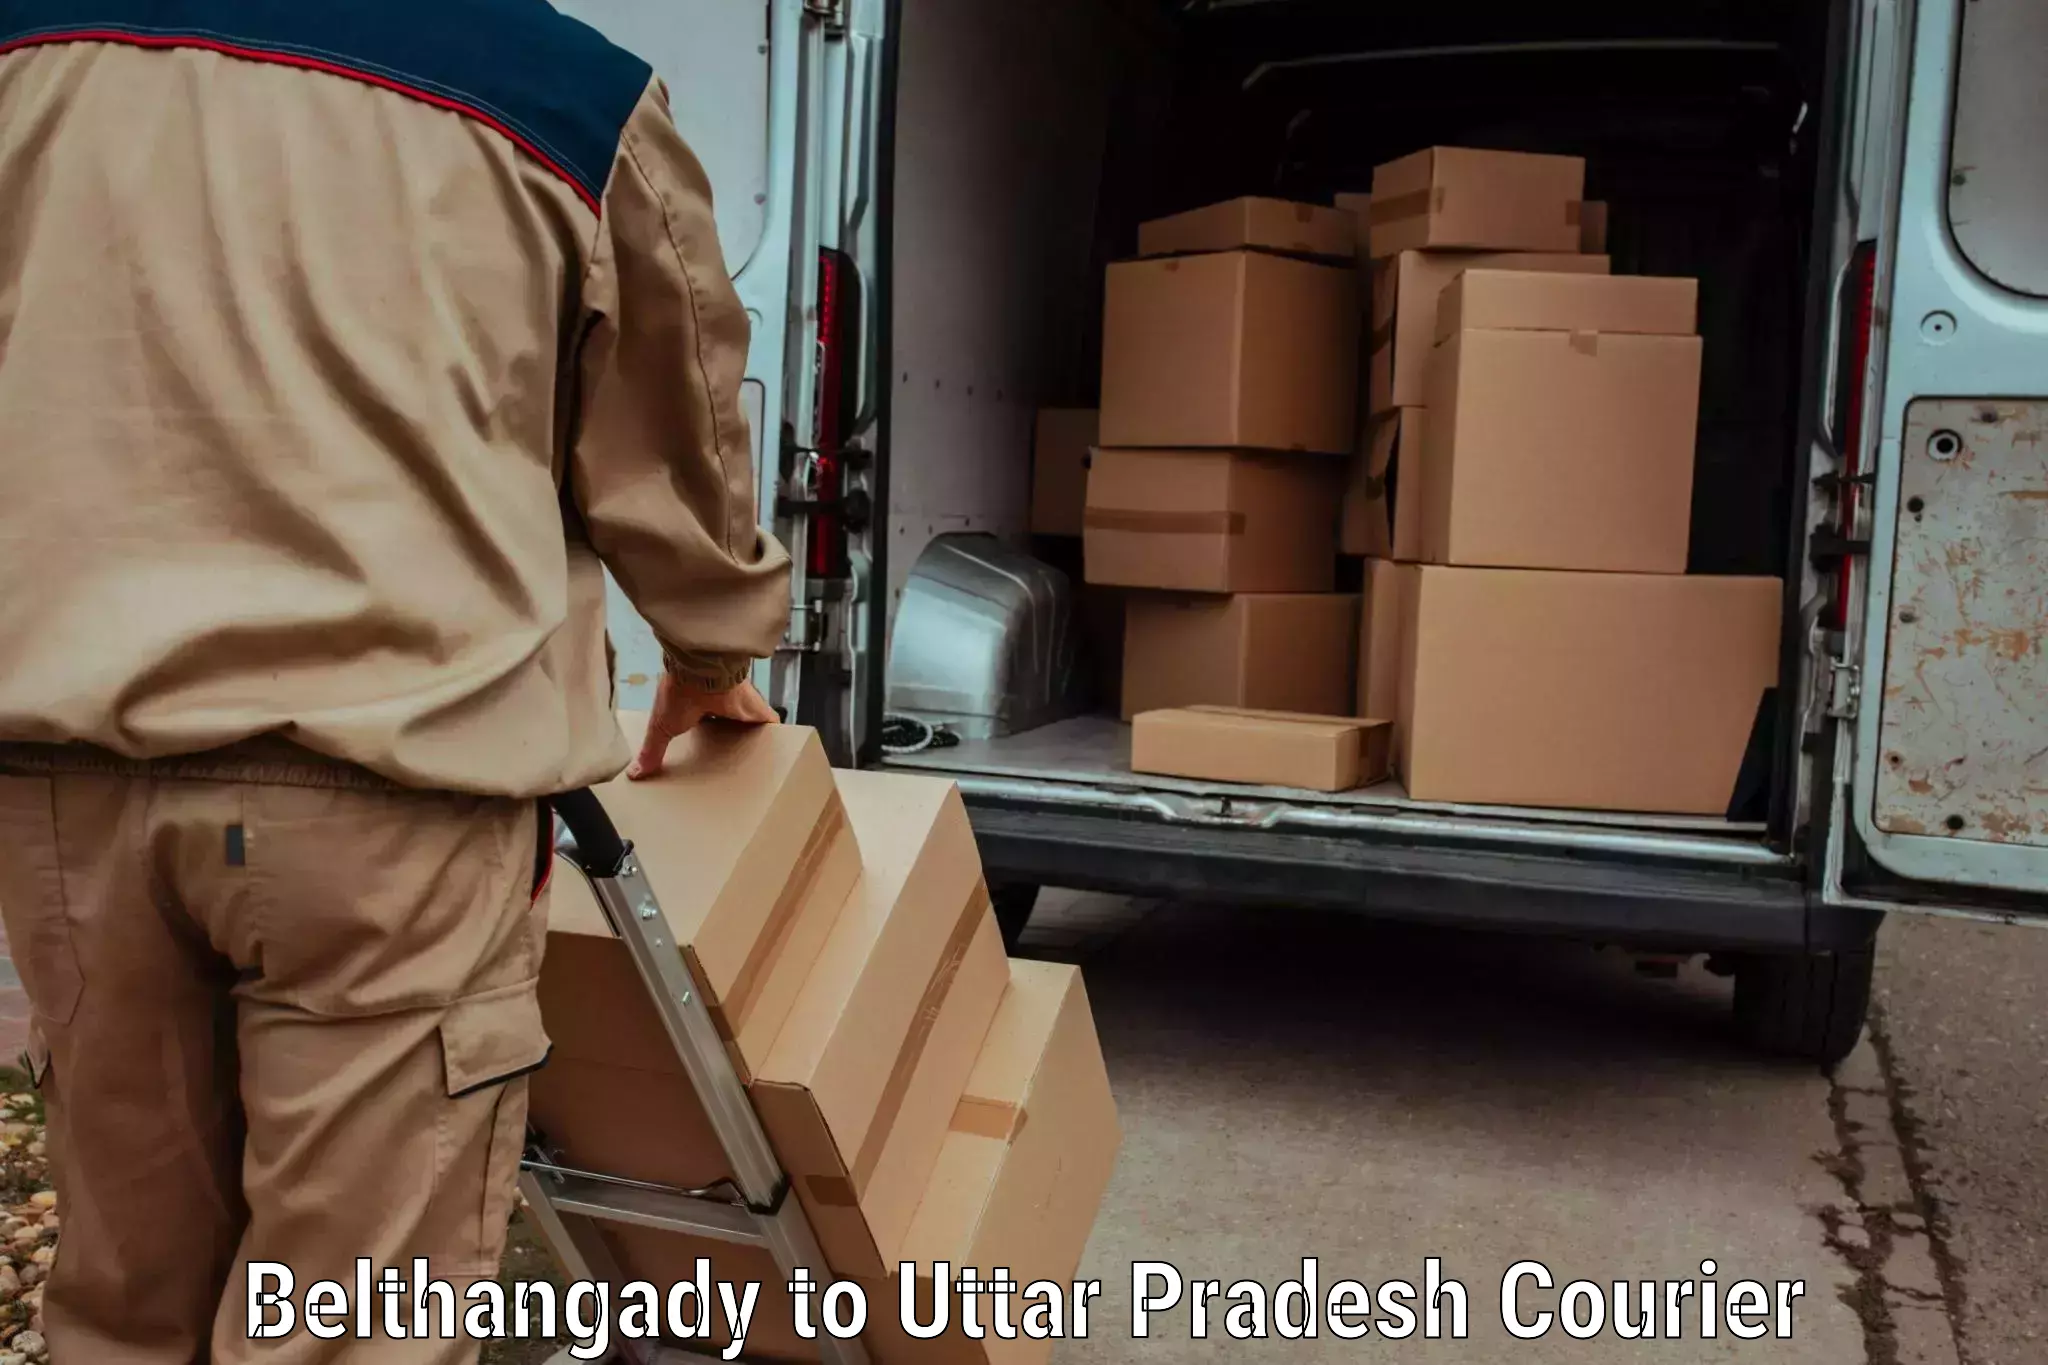 Doorstep delivery service Belthangady to Vrindavan